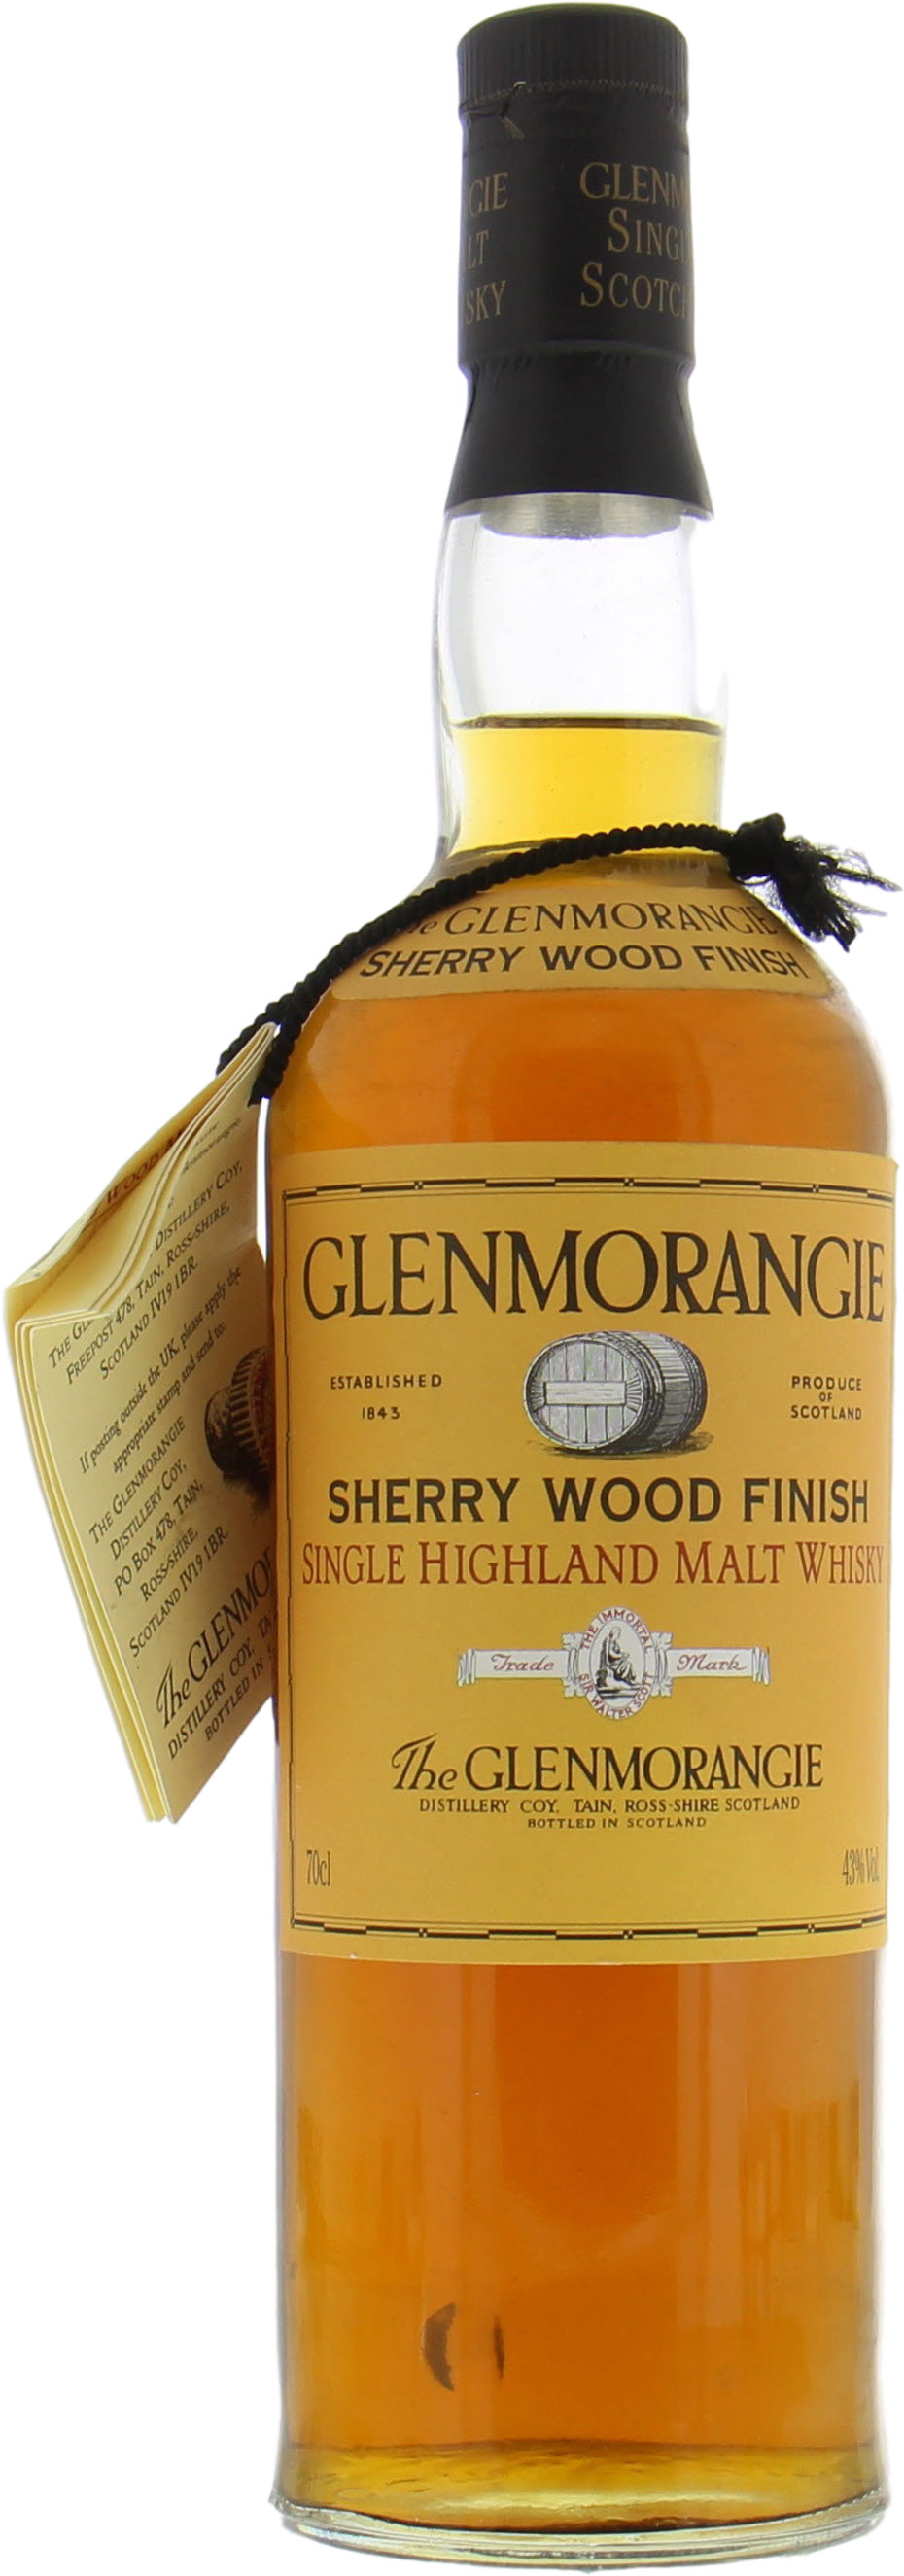 Glenmorangie - Sherry Wood Finish Old Plain (Orange) Label 43% nv